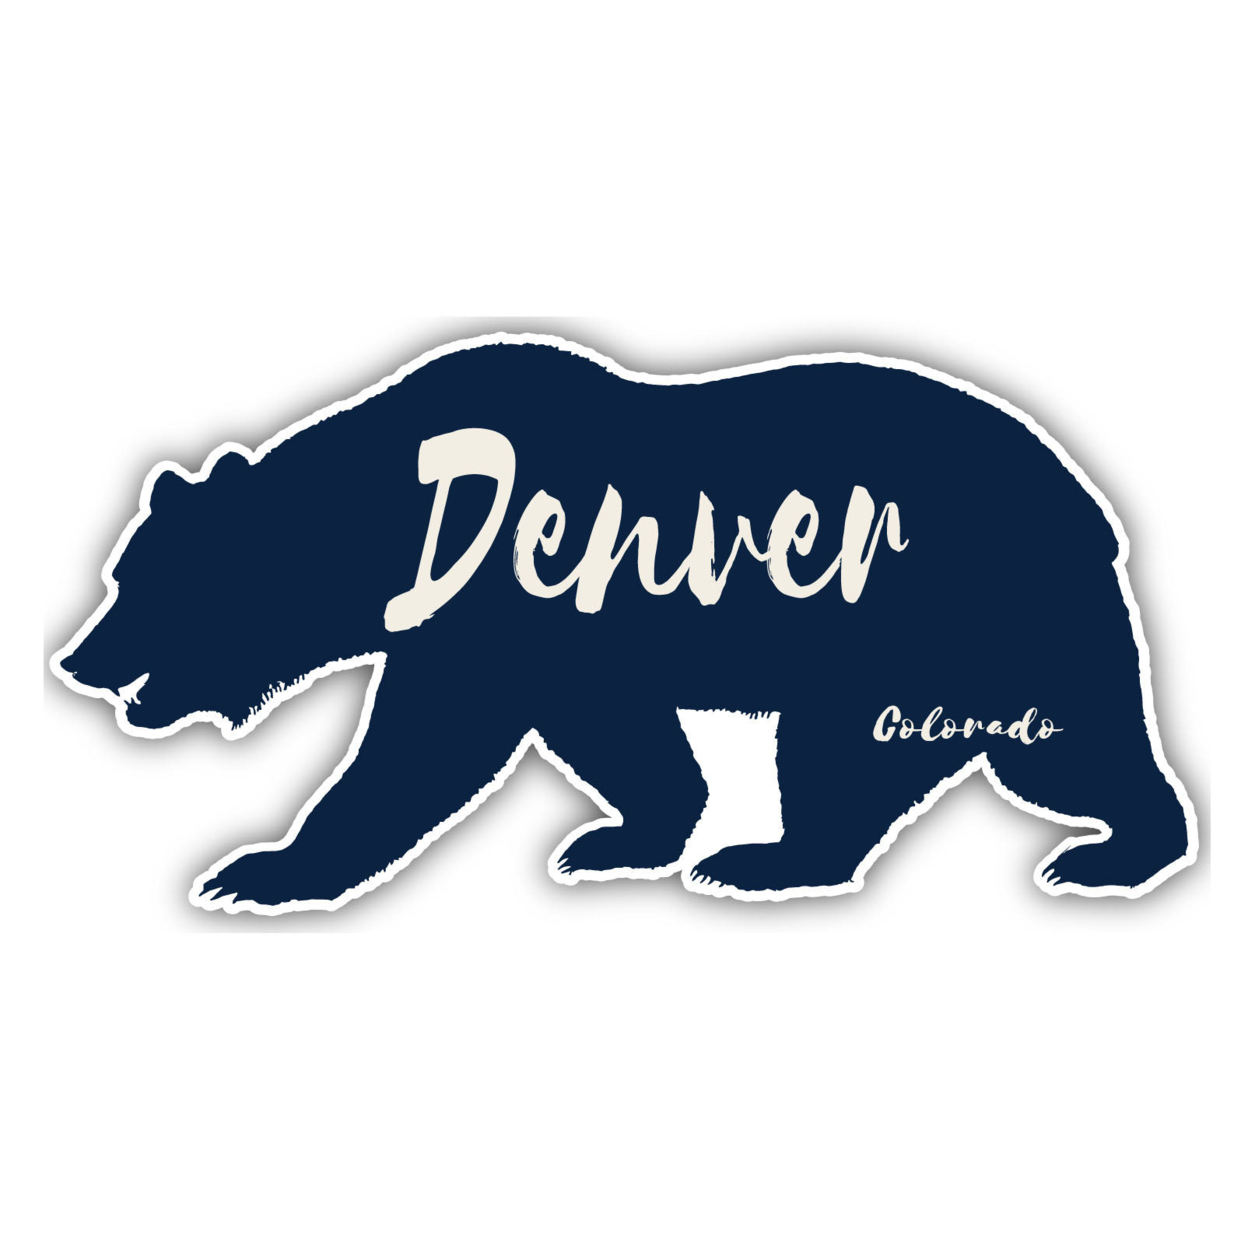 Denver Colorado Souvenir Decorative Stickers (Choose Theme And Size) - Single Unit, 2-Inch, Tent